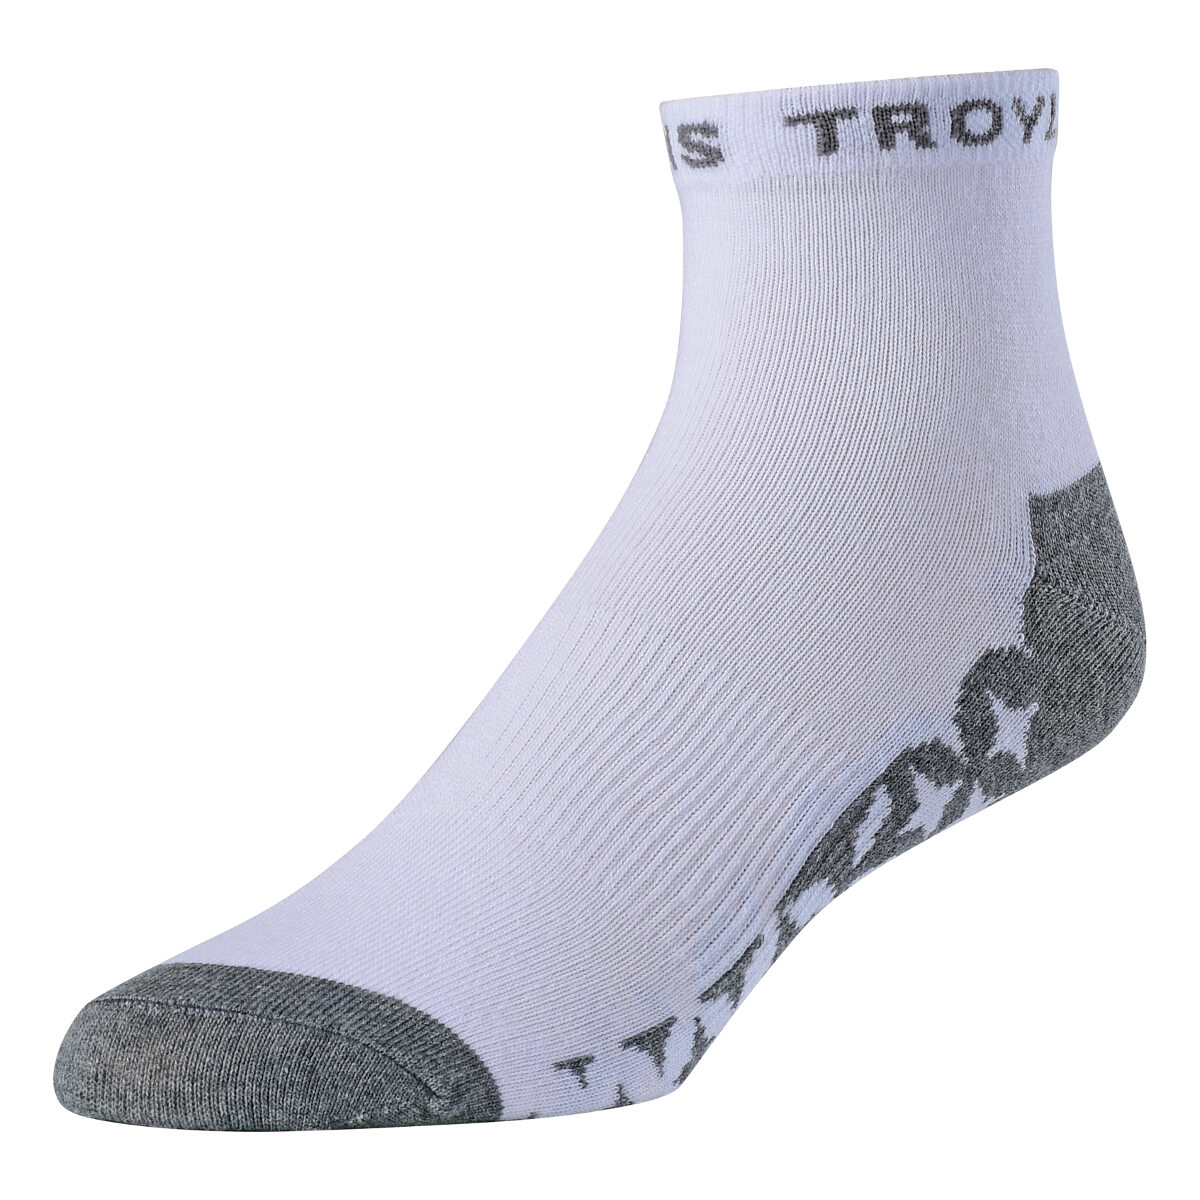 Troy Lee Designs Socken Starburst Quarter Weiß, 3er Pack